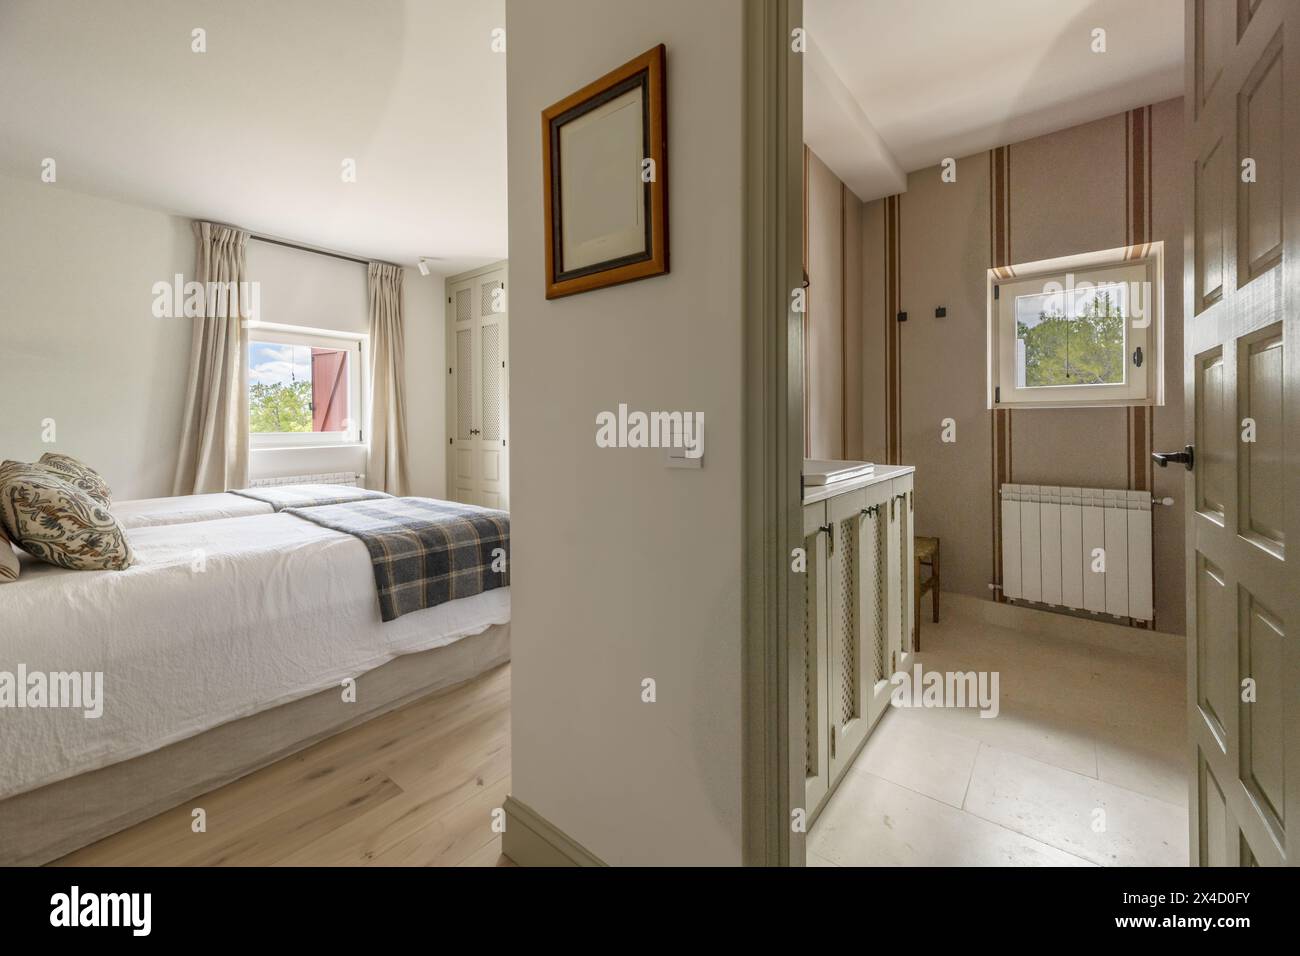 Ein Schlafzimmer mit zusammengeschobenen Twin-Betten, Decken und Stoffpolsterkissen und einem Badezimmer im selben Zimmer Stockfoto